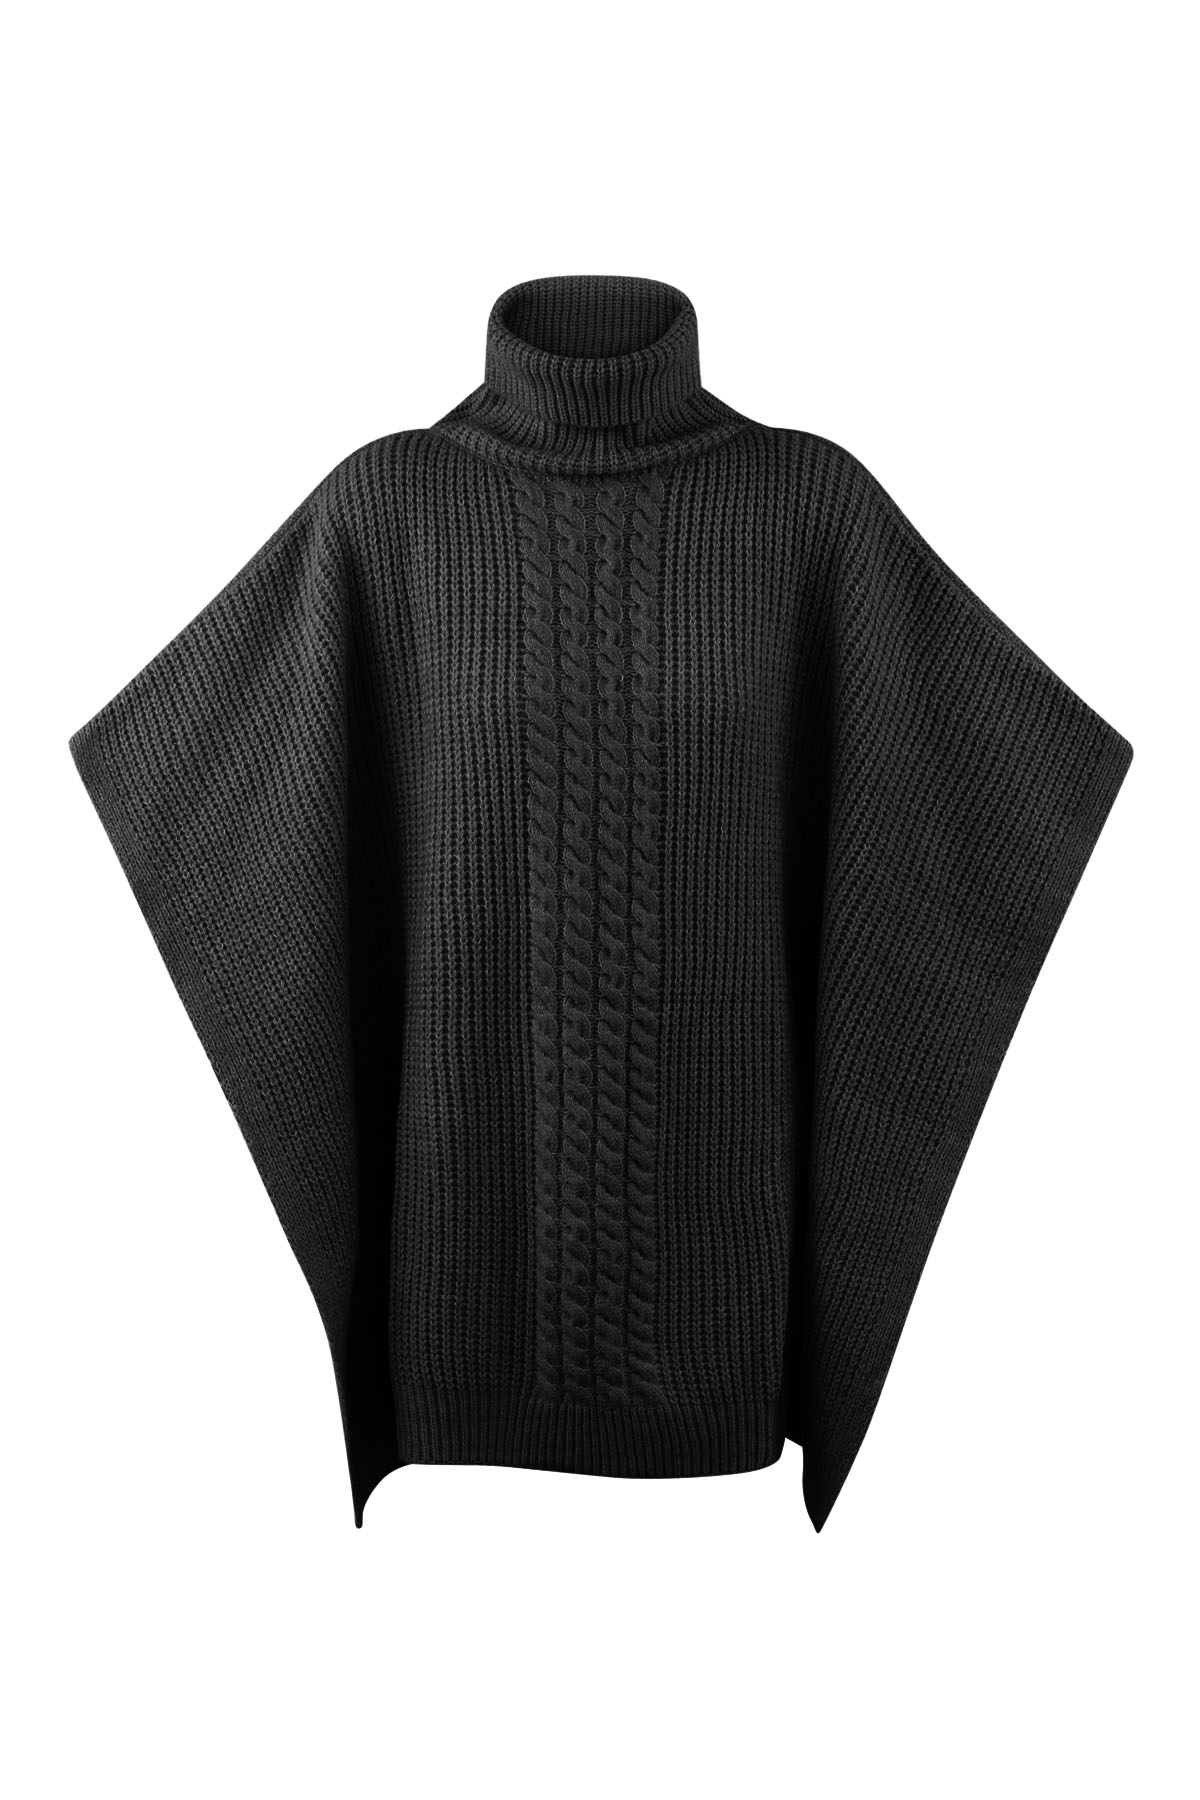 Poncho tricoté uni - noir h5 